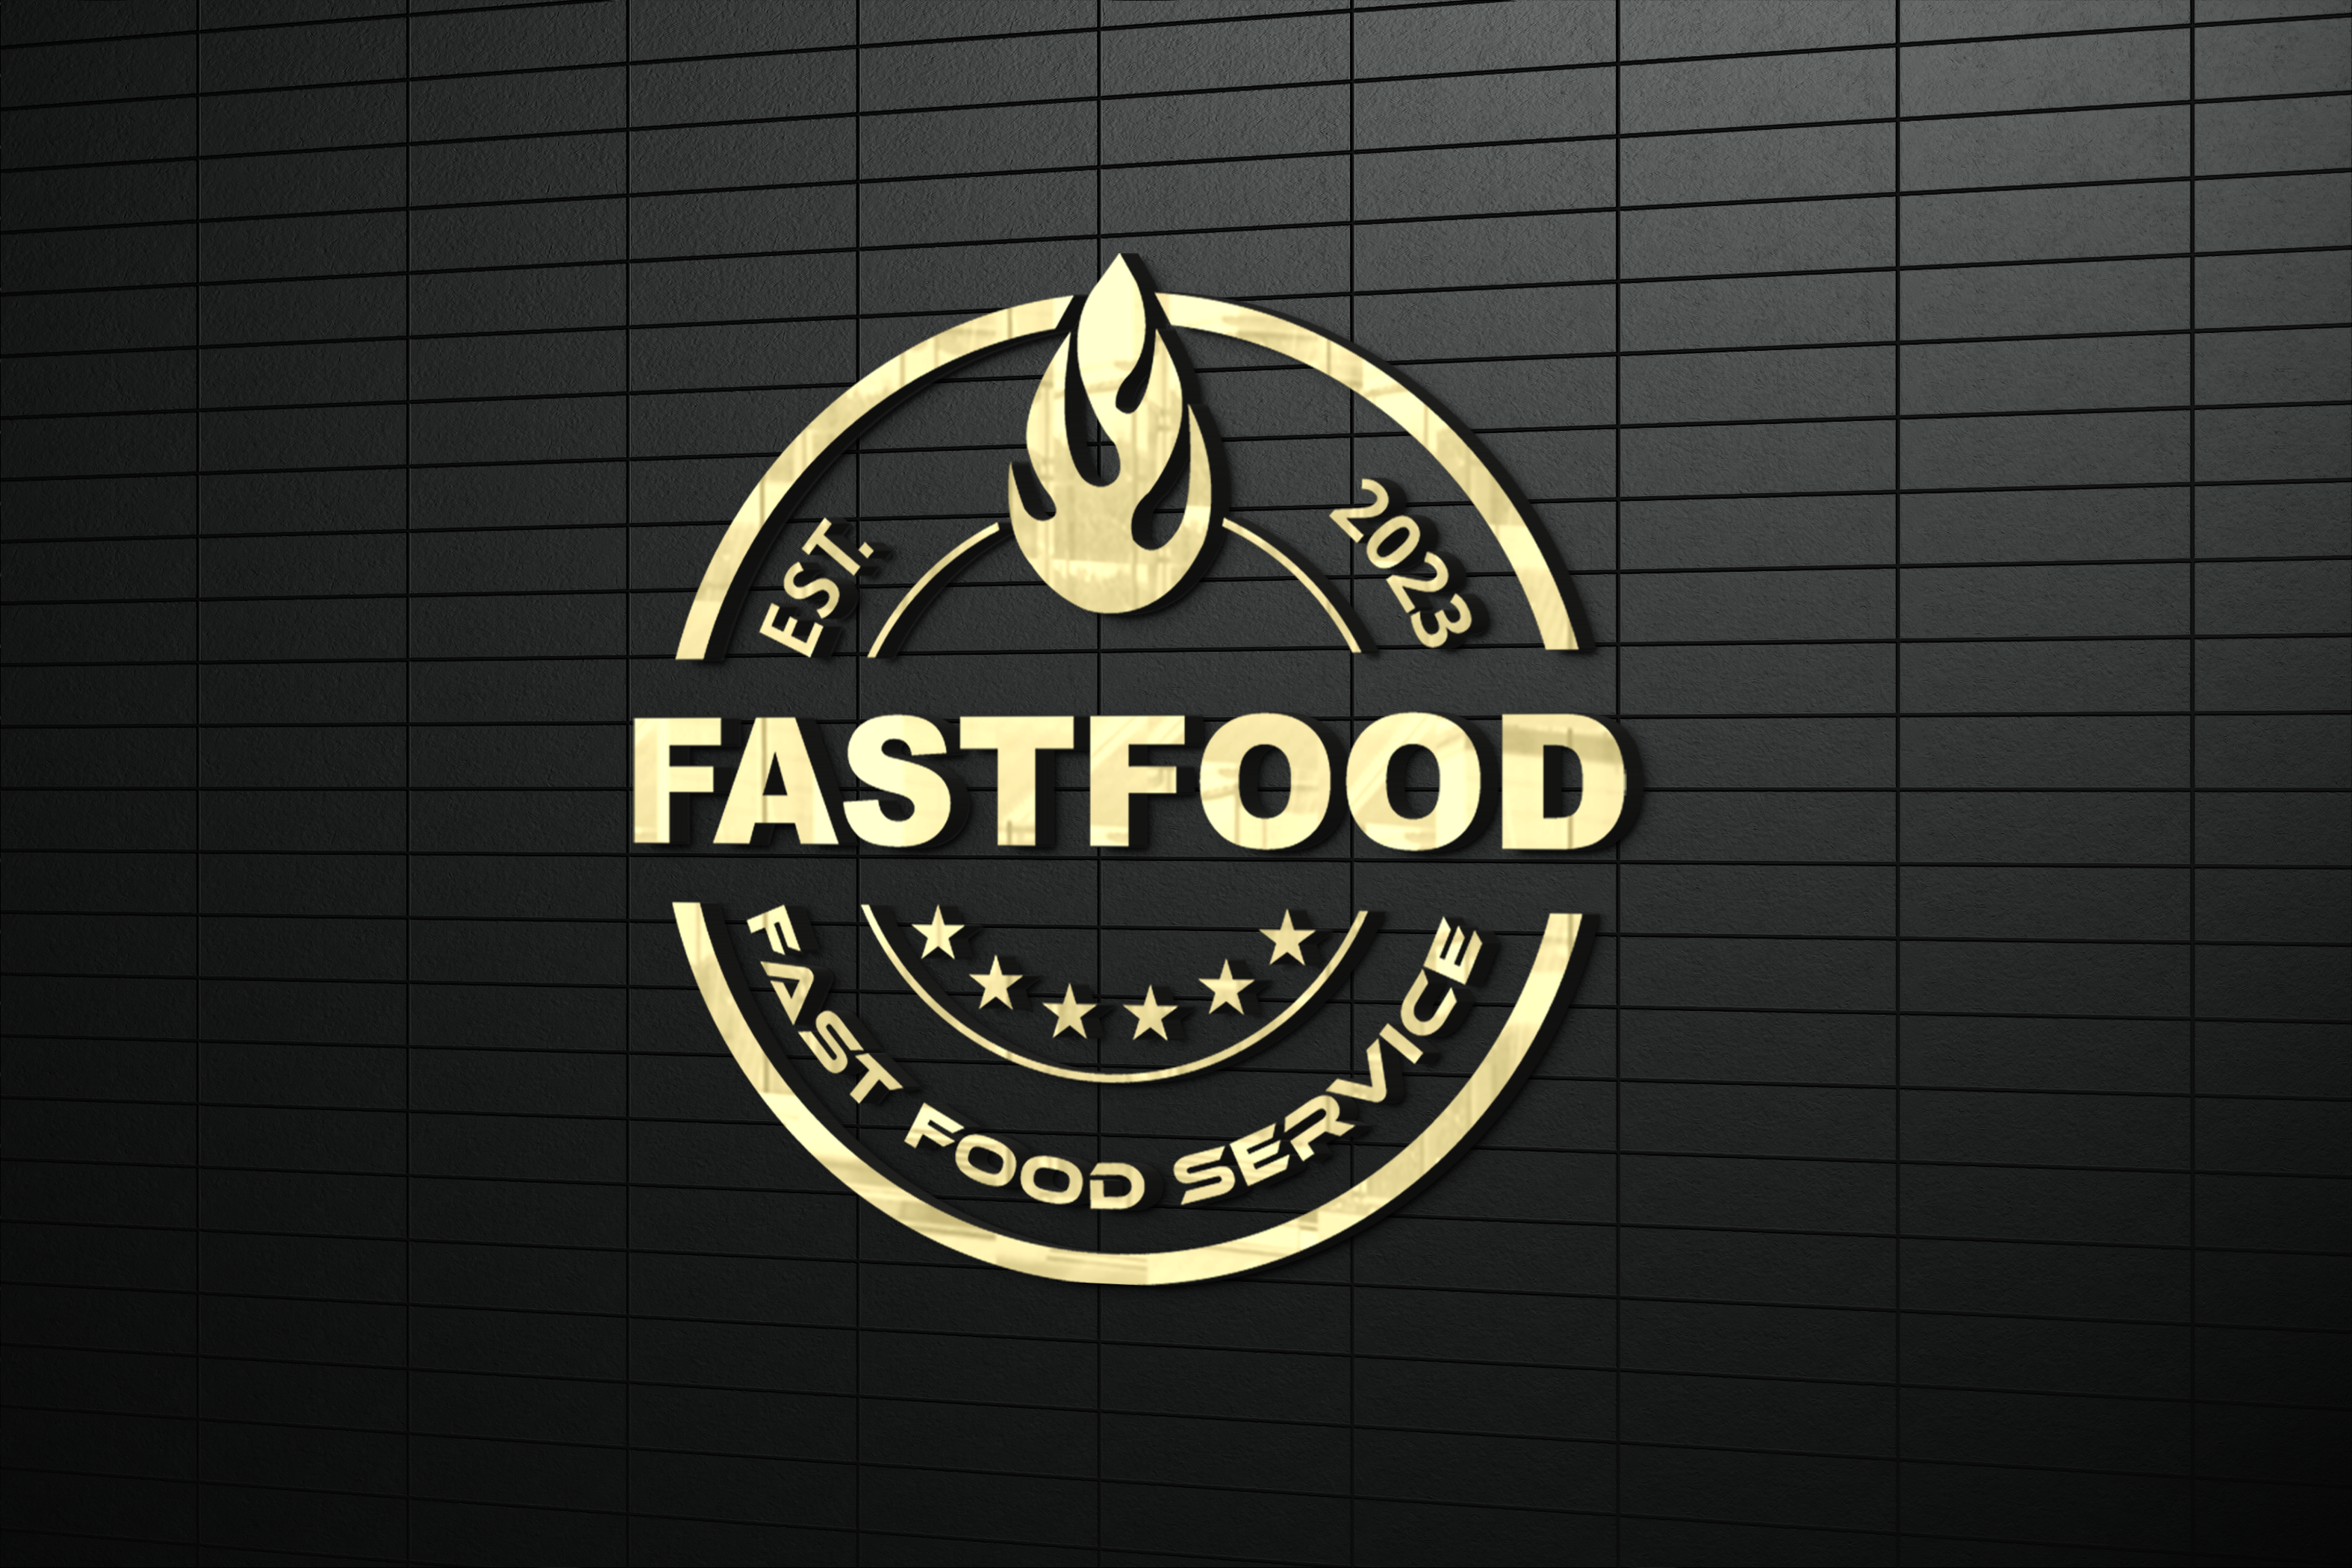 Fast food logo restaurant cafe or diner Royalty Free Vector